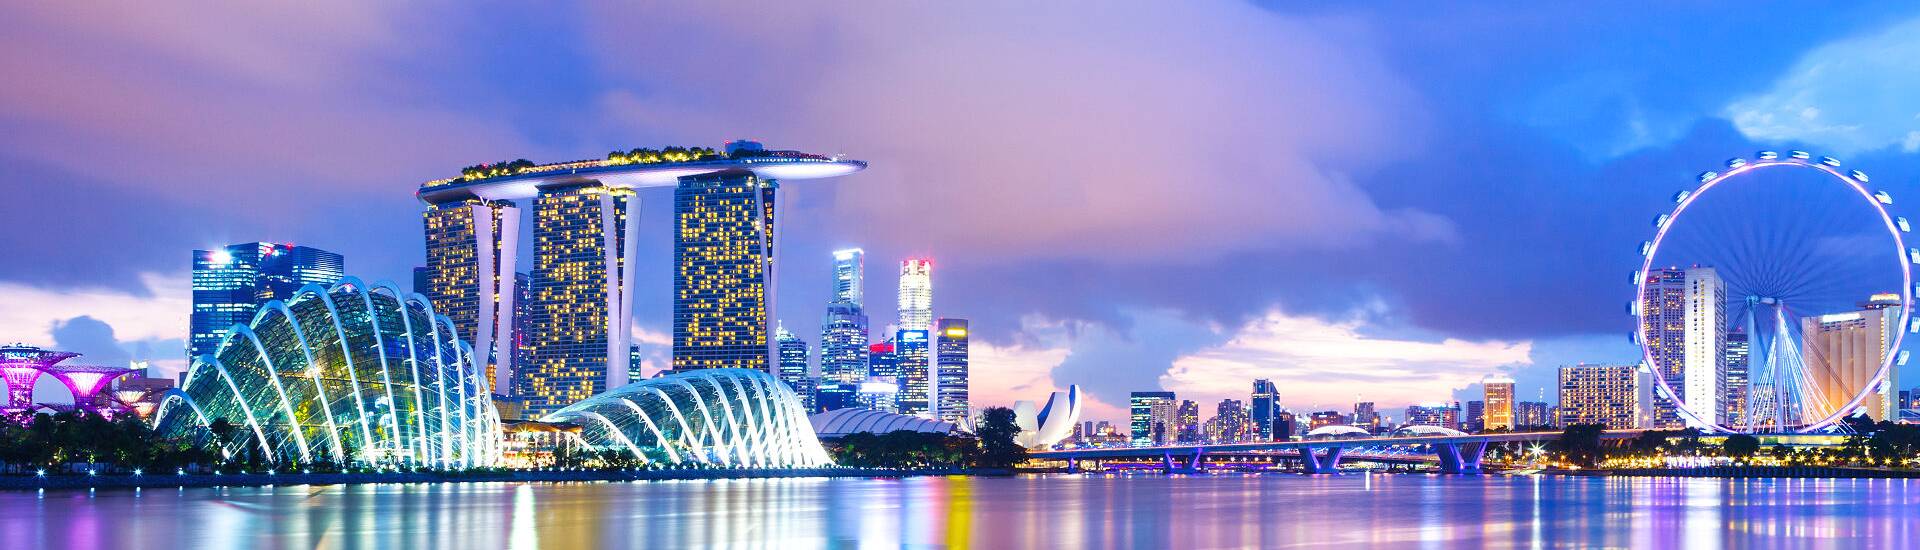 Marina Bay Singapur - idealer Zeitpunkt für eine Reise in die pulsierende Metropole.